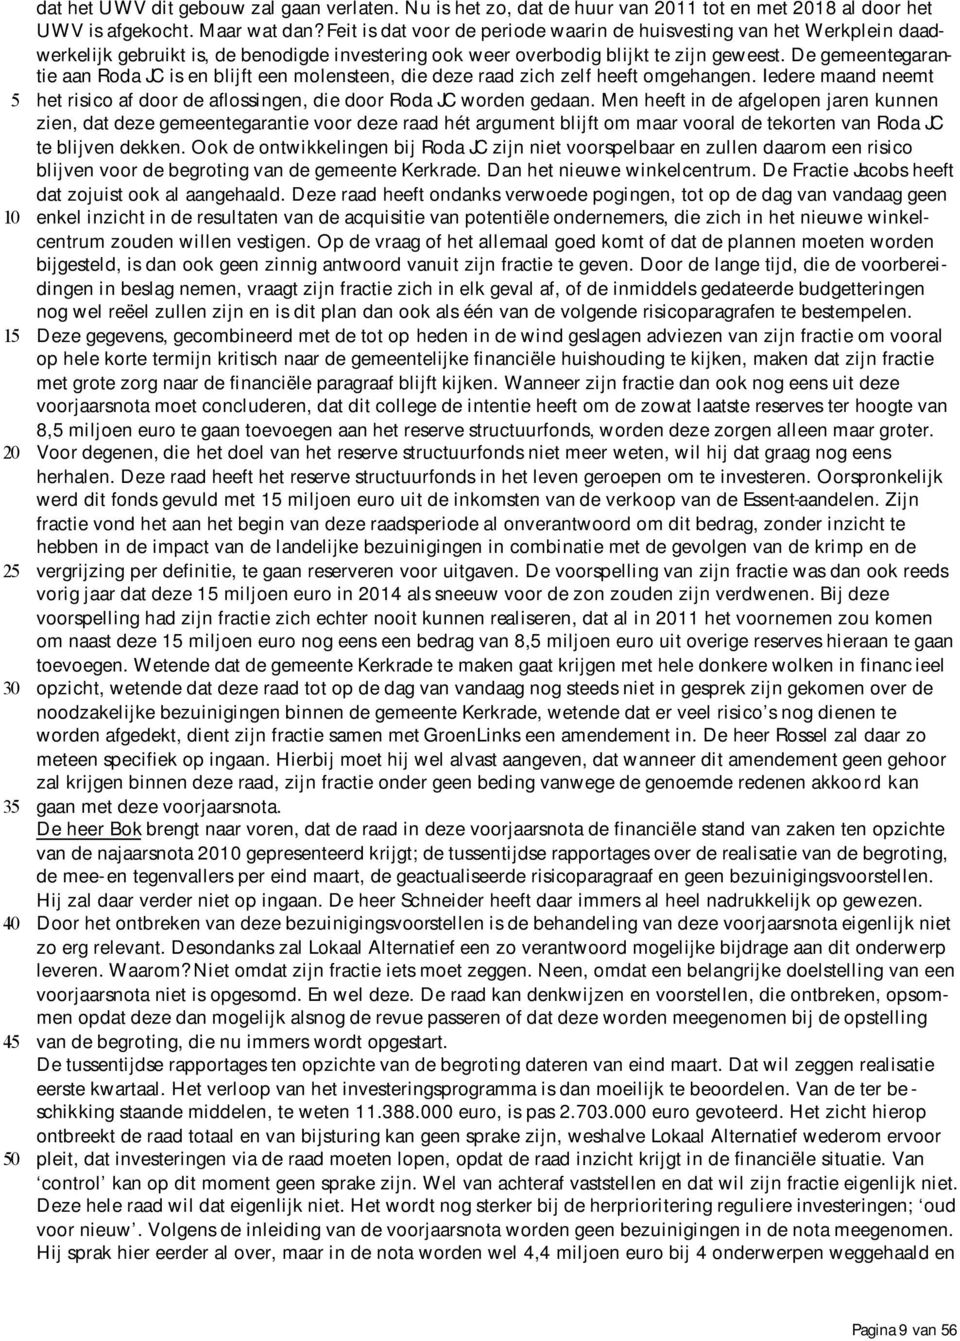 De gemeentegarantie aan Roda JC is en blijft een molensteen, die deze raad zich zelf heeft omgehangen. Iedere maand neemt het risico af door de aflossingen, die door Roda JC worden gedaan.